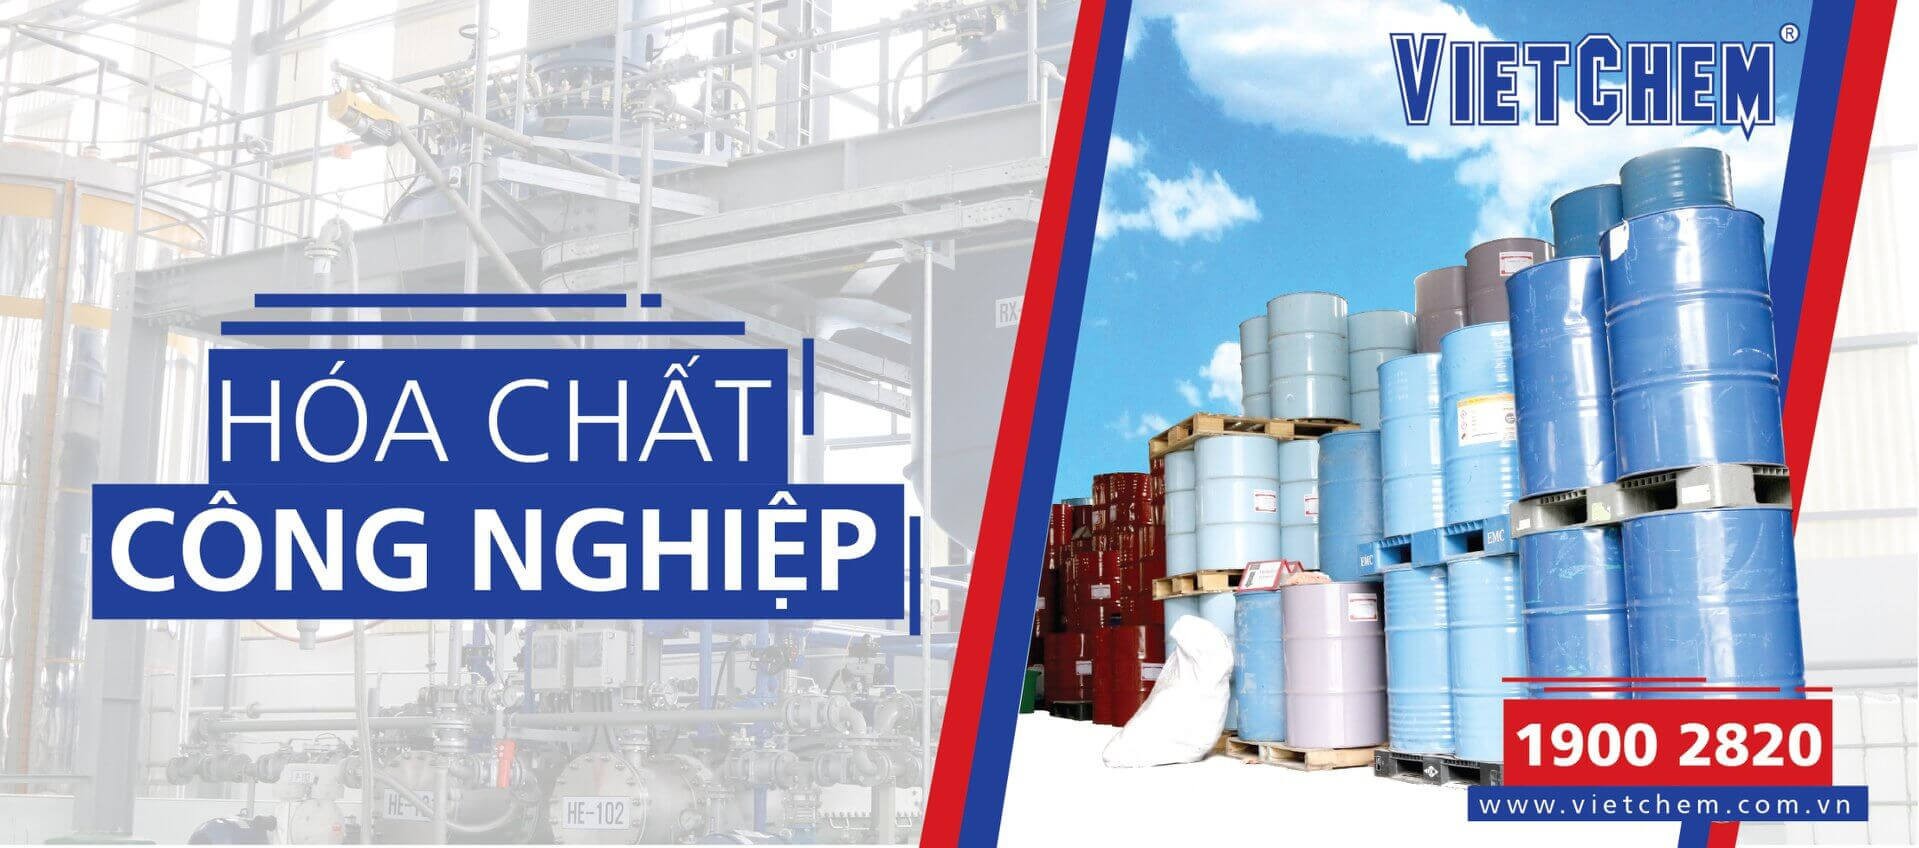 VietChem - Công ty hàng đầu chuyên cung ứng các loại hóa chất công nghiệp